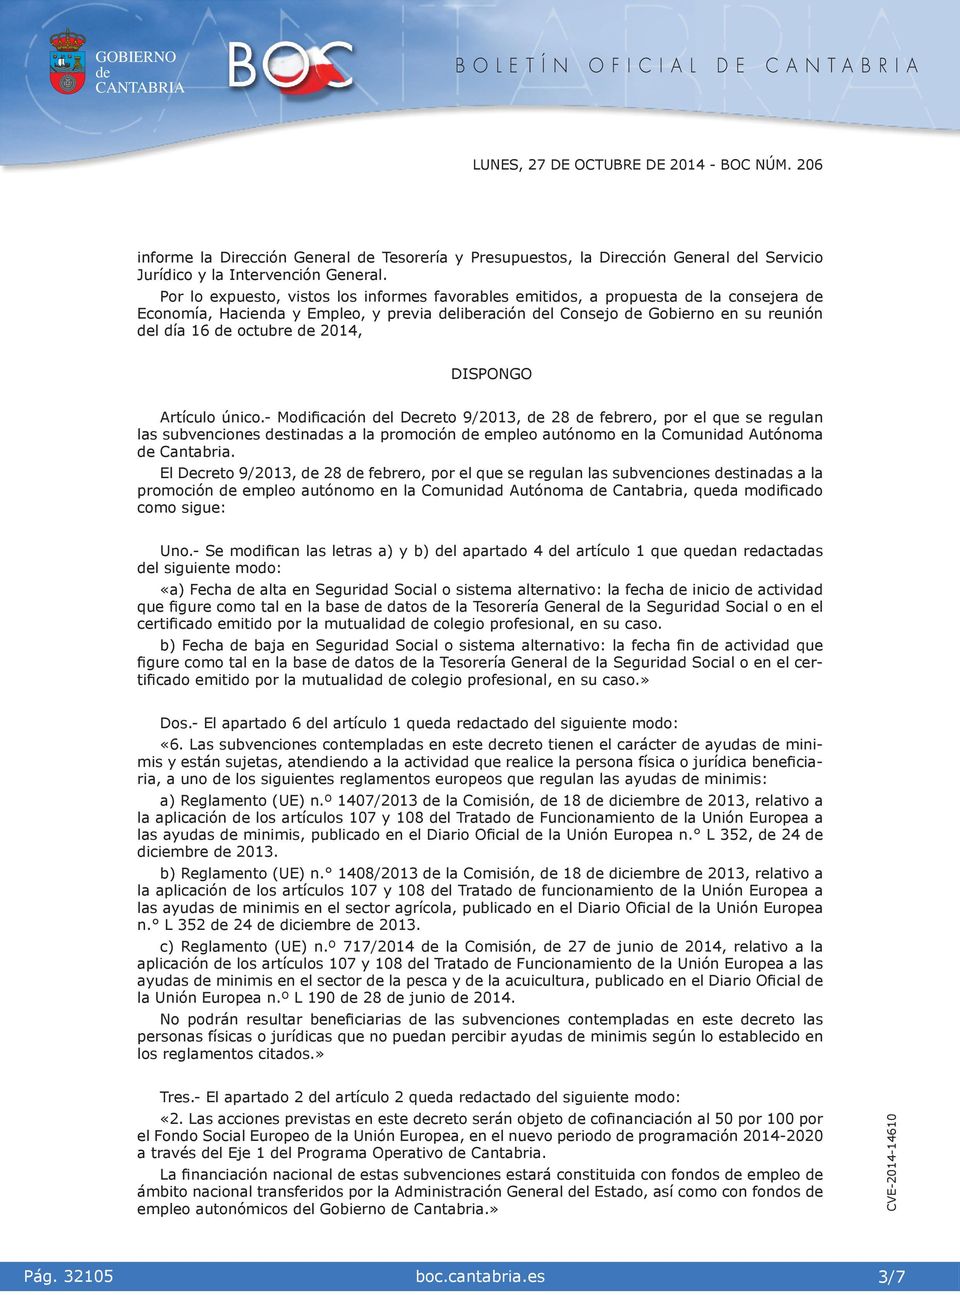 únco.- Modfcacón l Decreto 9/2013, 28 febrero, por el que se regulan las subvencones stnadas a la promocón empleo autónomo en la Comundad Autónoma Cantabra.